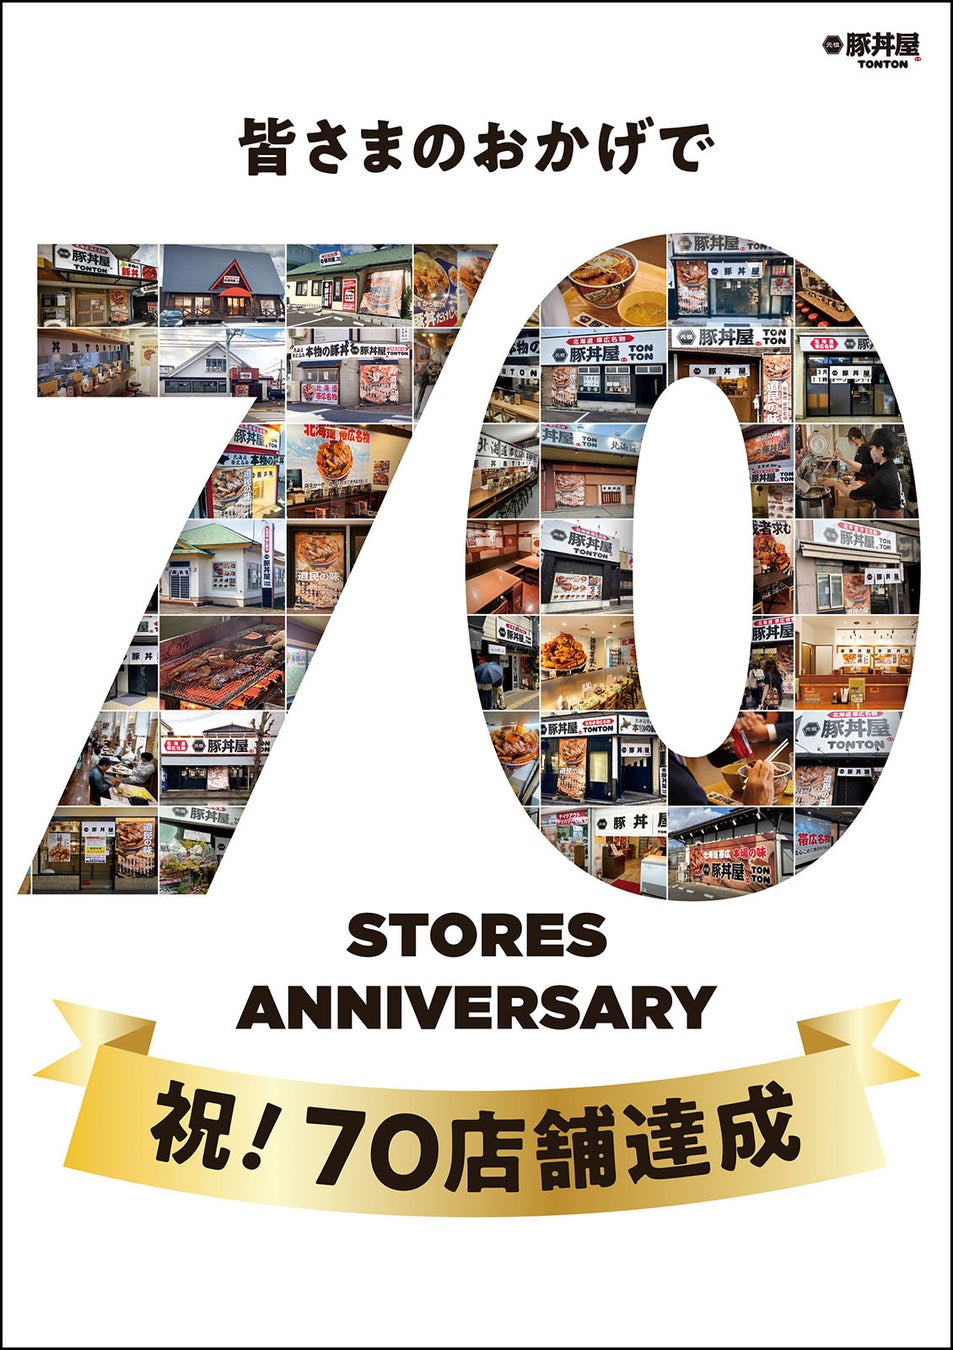 帯広豚丼が人気の元祖豚丼屋TONTONが70店舗達成！